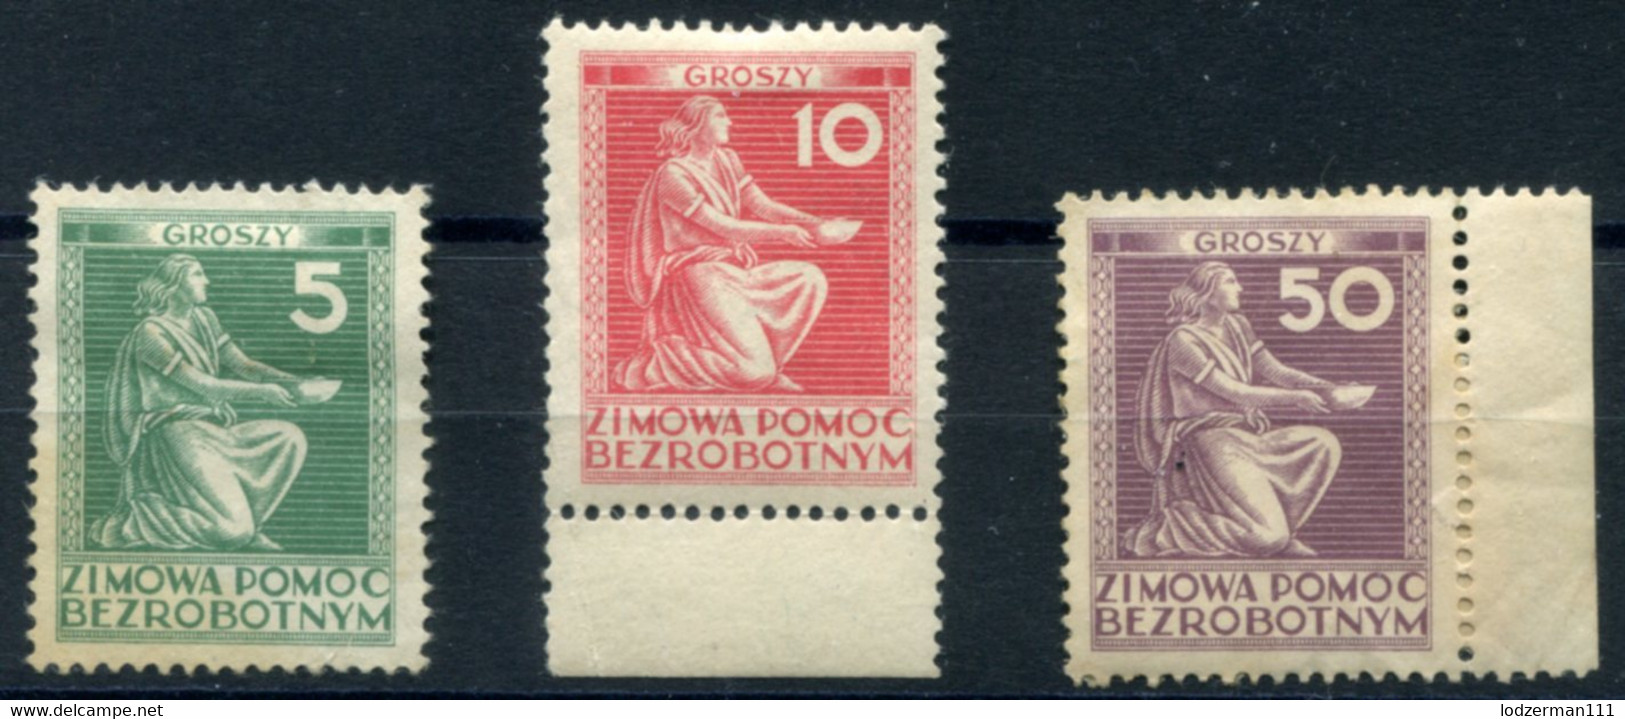 1935 Surtax BEZROBOTNYM (unemployment) - 3 Stamps (MNG-MH) Rare - Steuermarken